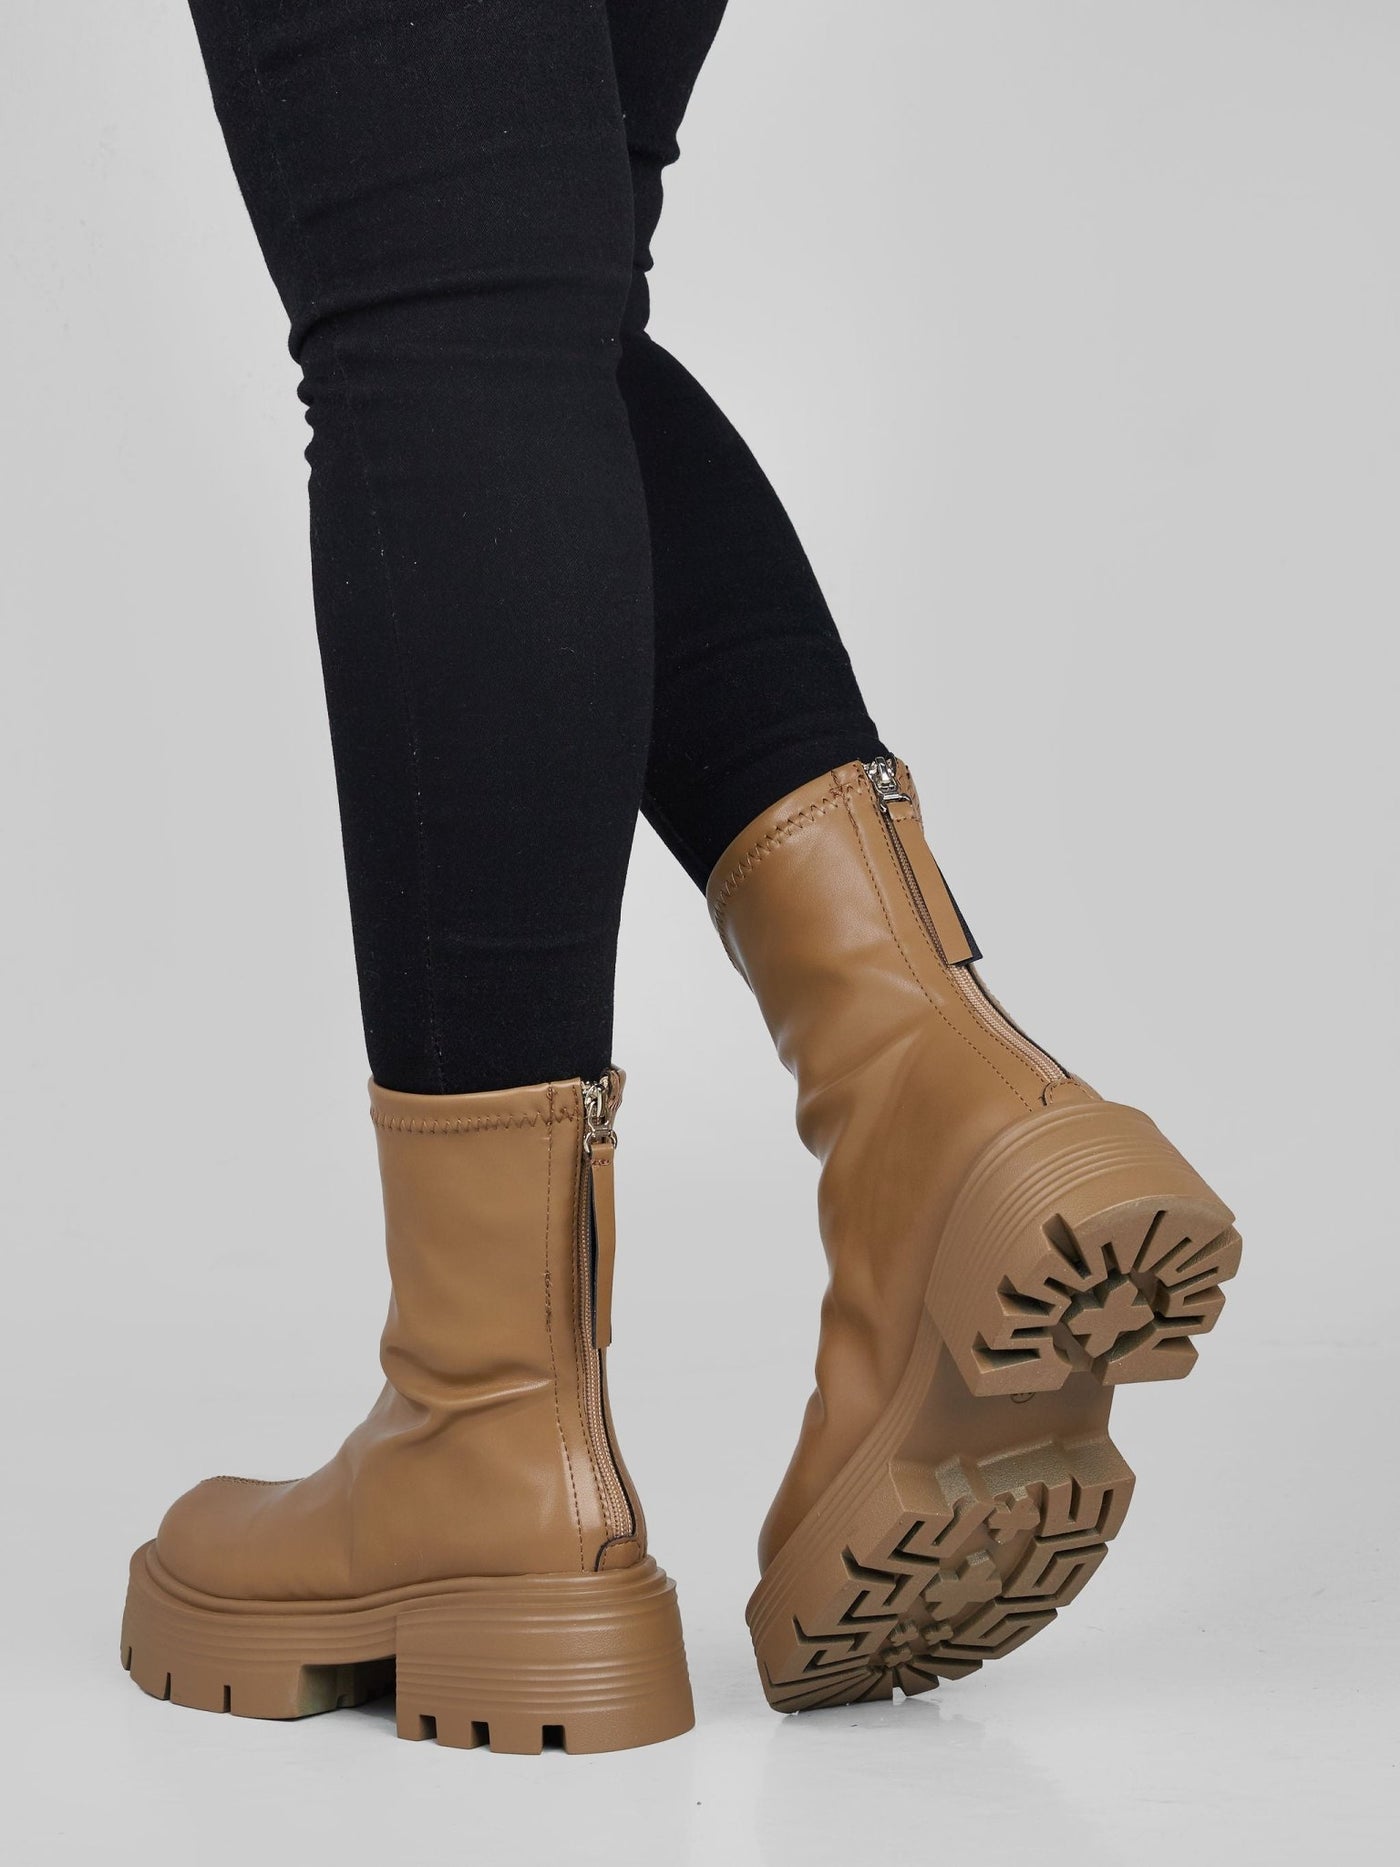 Ziatu Women's Ankle Boots - Khaki Brown - Shopzetu